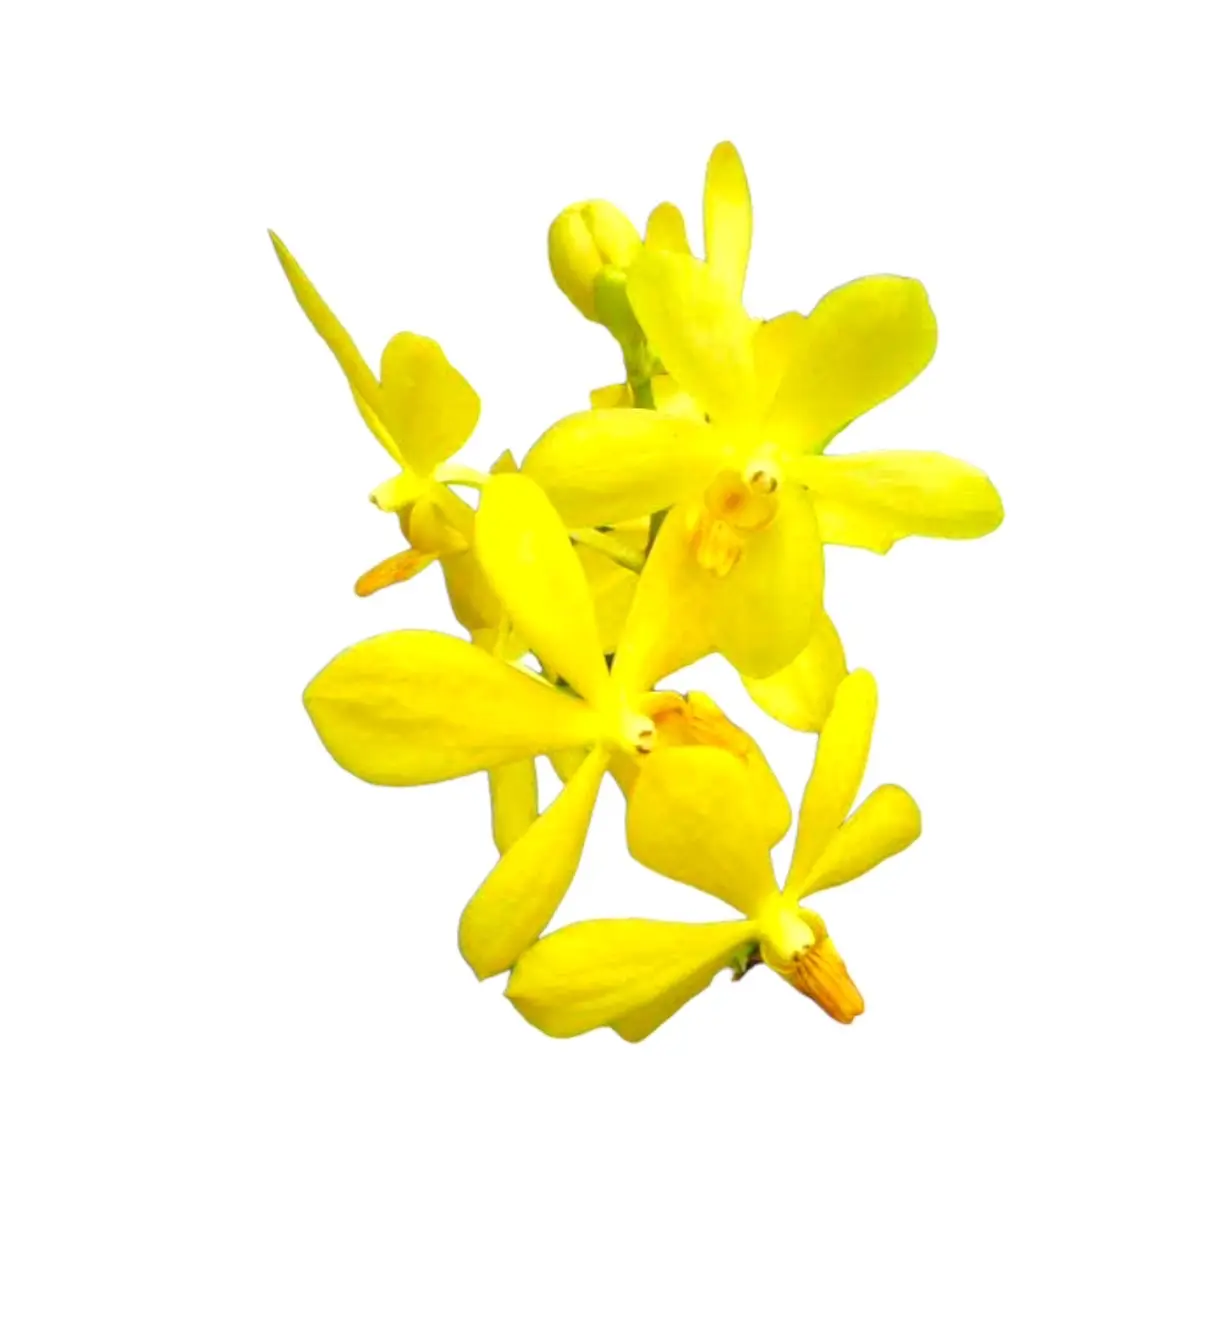 पीला मोकारा ताजा कट आर्किड फूल ऑर्किड फूल निर्यात के लिए सुगंधित होते हैं और आर्किड किसानों द्वारा देश के भीतर बेचे जाते हैं